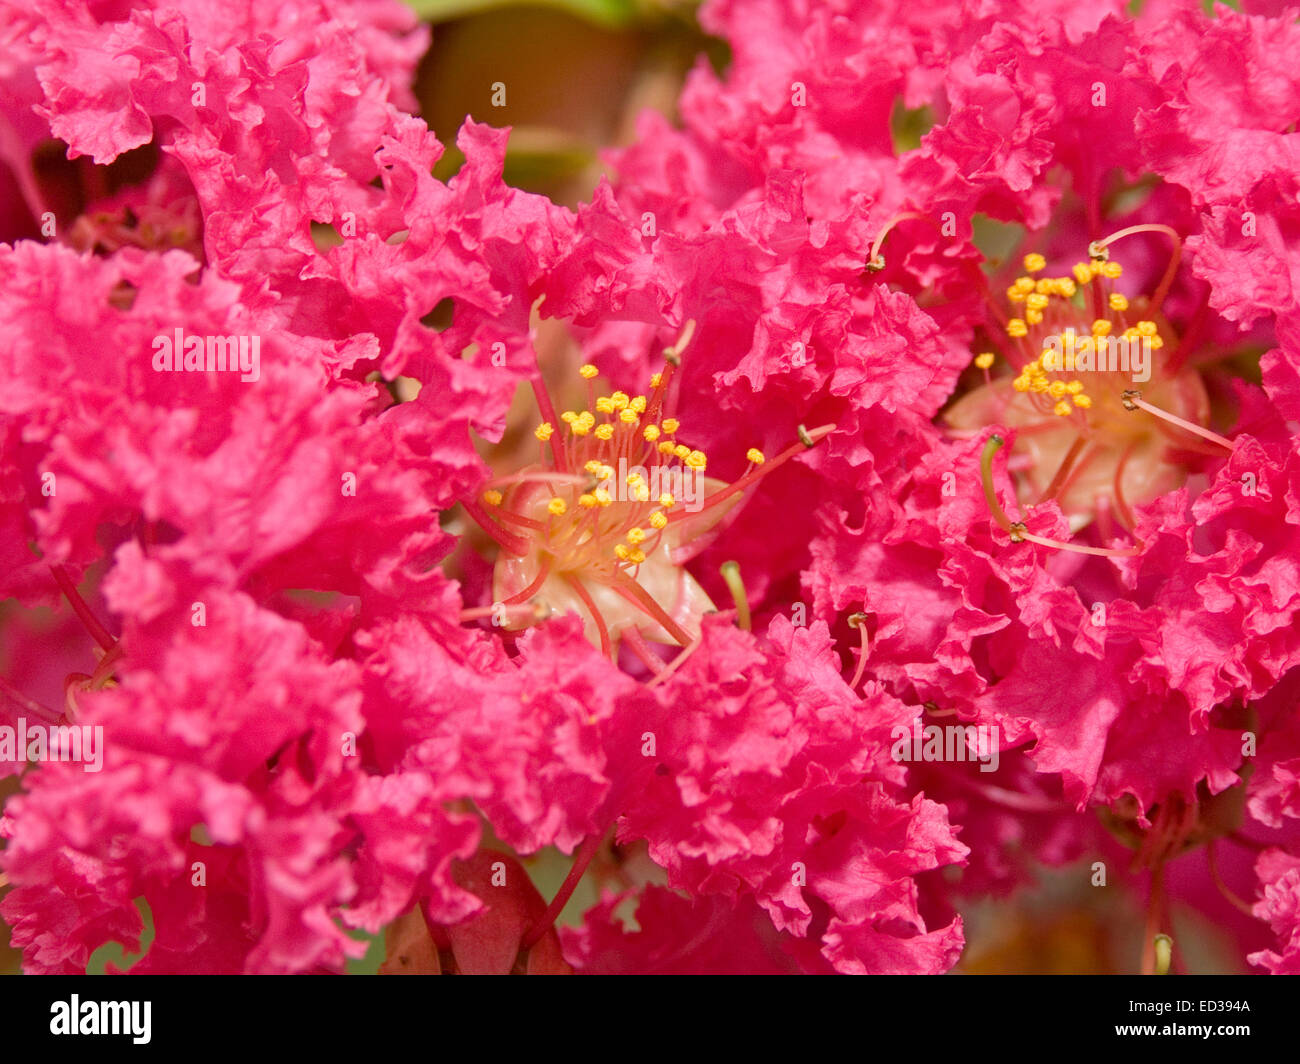 Close-up de grande grappe de fleurs rose / rouge vif de Lagerstroemia indica, crepe myrtle,avec étamines couvertes avec du pollen Banque D'Images